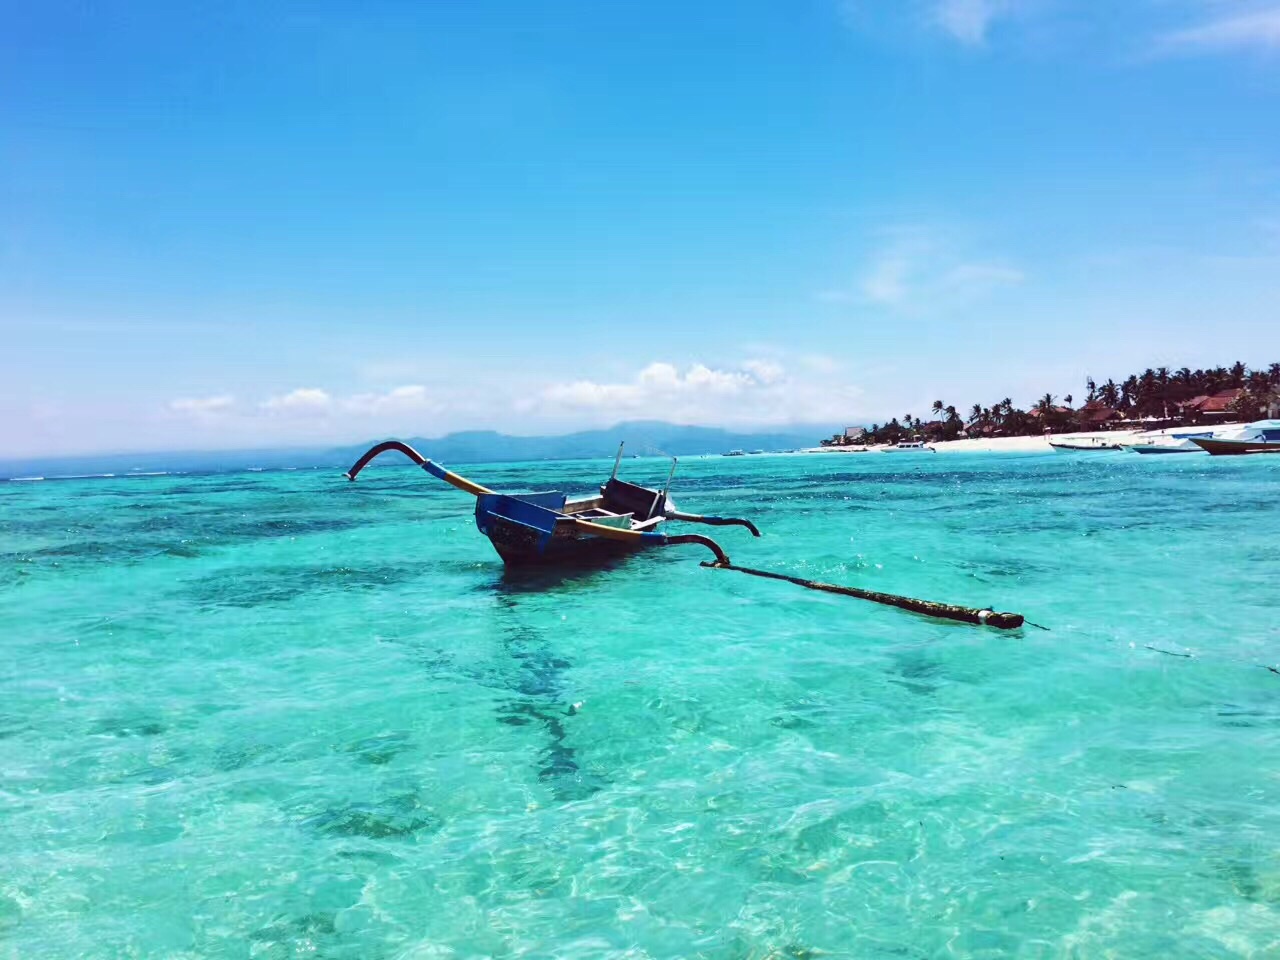 印度尼西亚的蓝梦岛